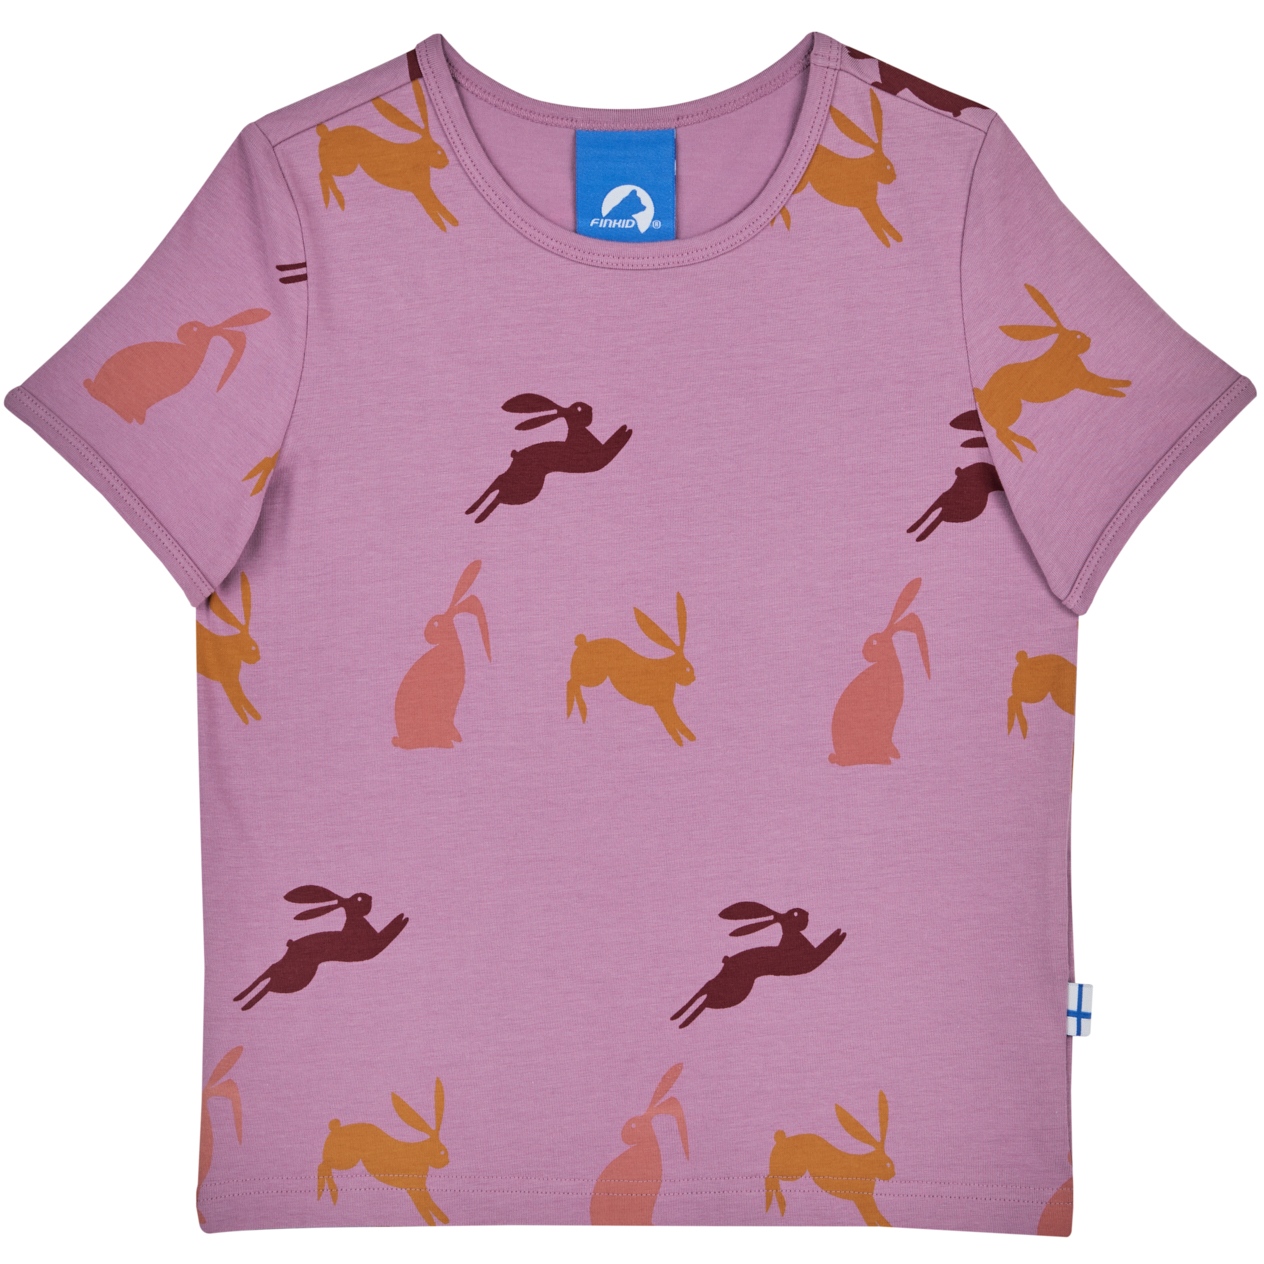 Produktbild von Finkid ILTA Jersey T-Shirt Kinder - valerian